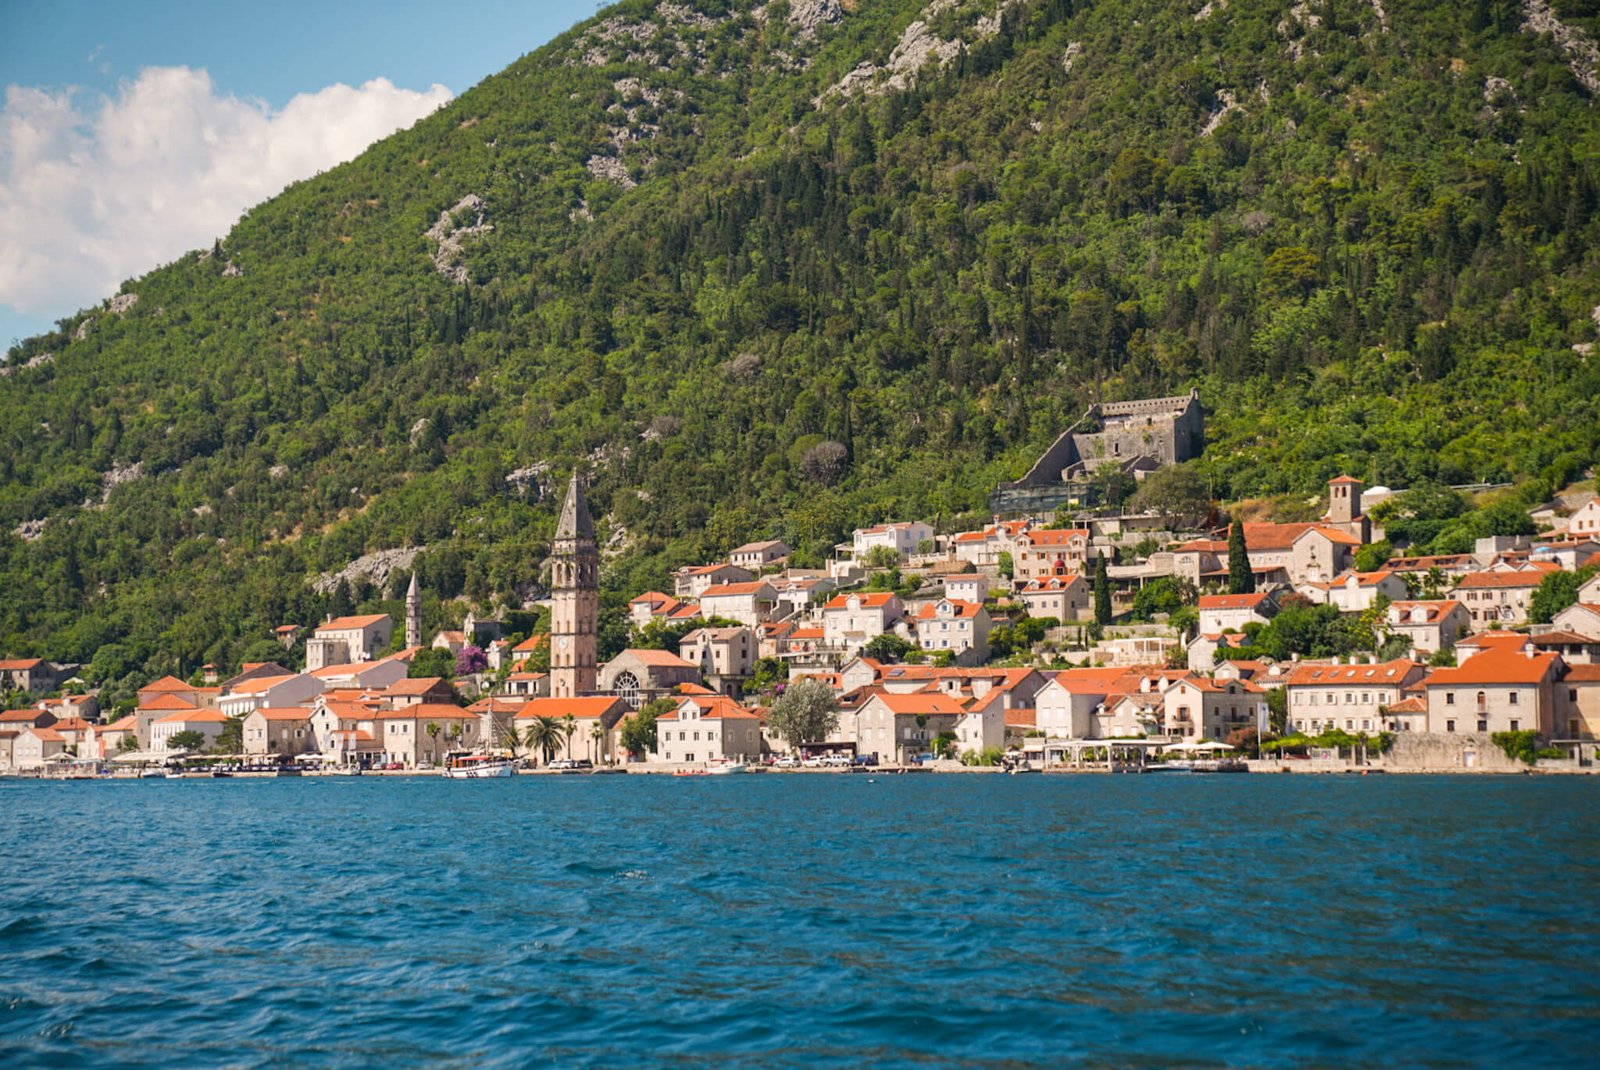 Old town of Kotor, Montenegro